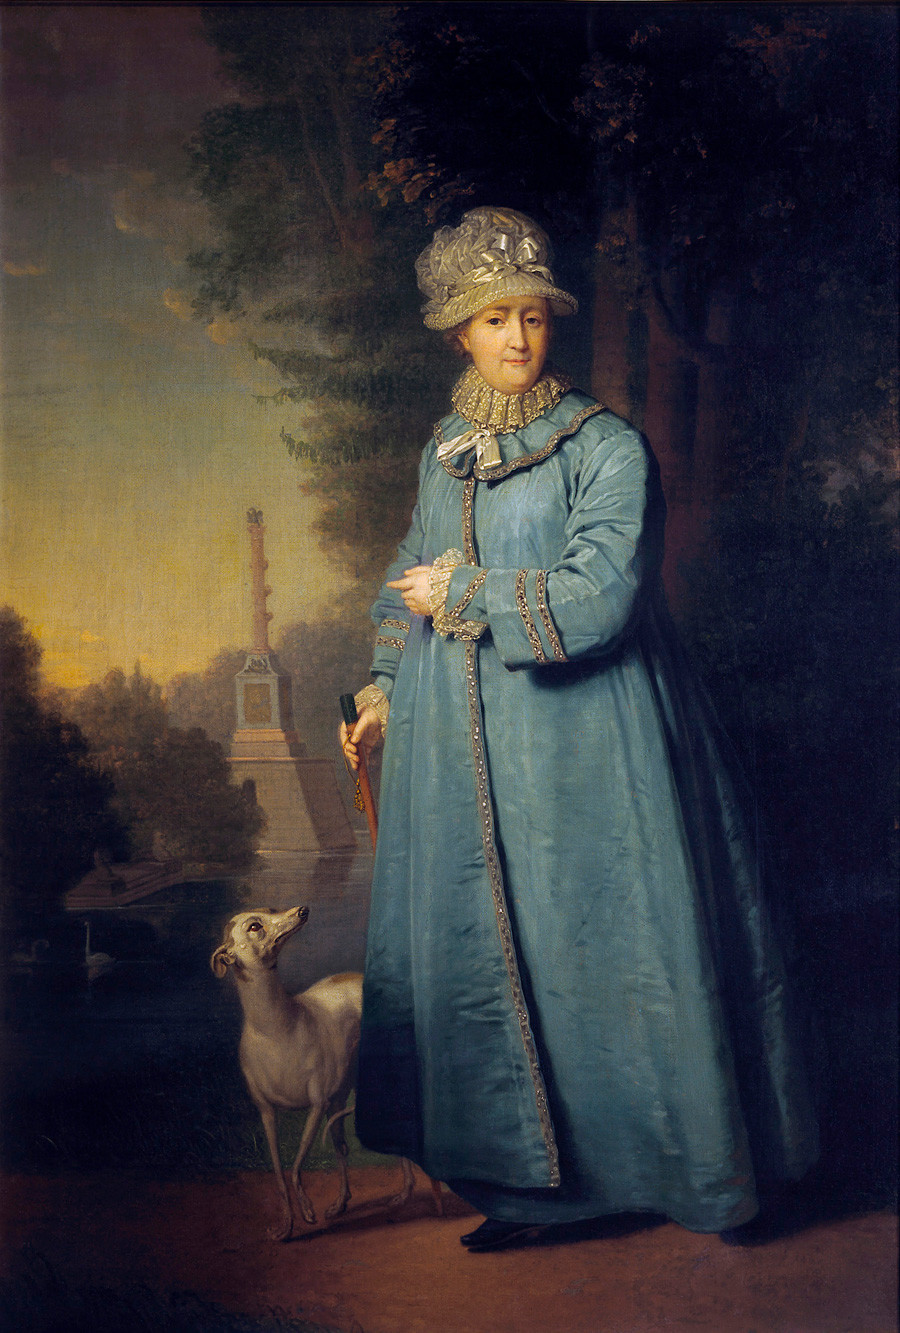 ‘Catarina, a Grande andando em Tsárskoie Selô’, de Vladimir Borovikovsky, 1794

